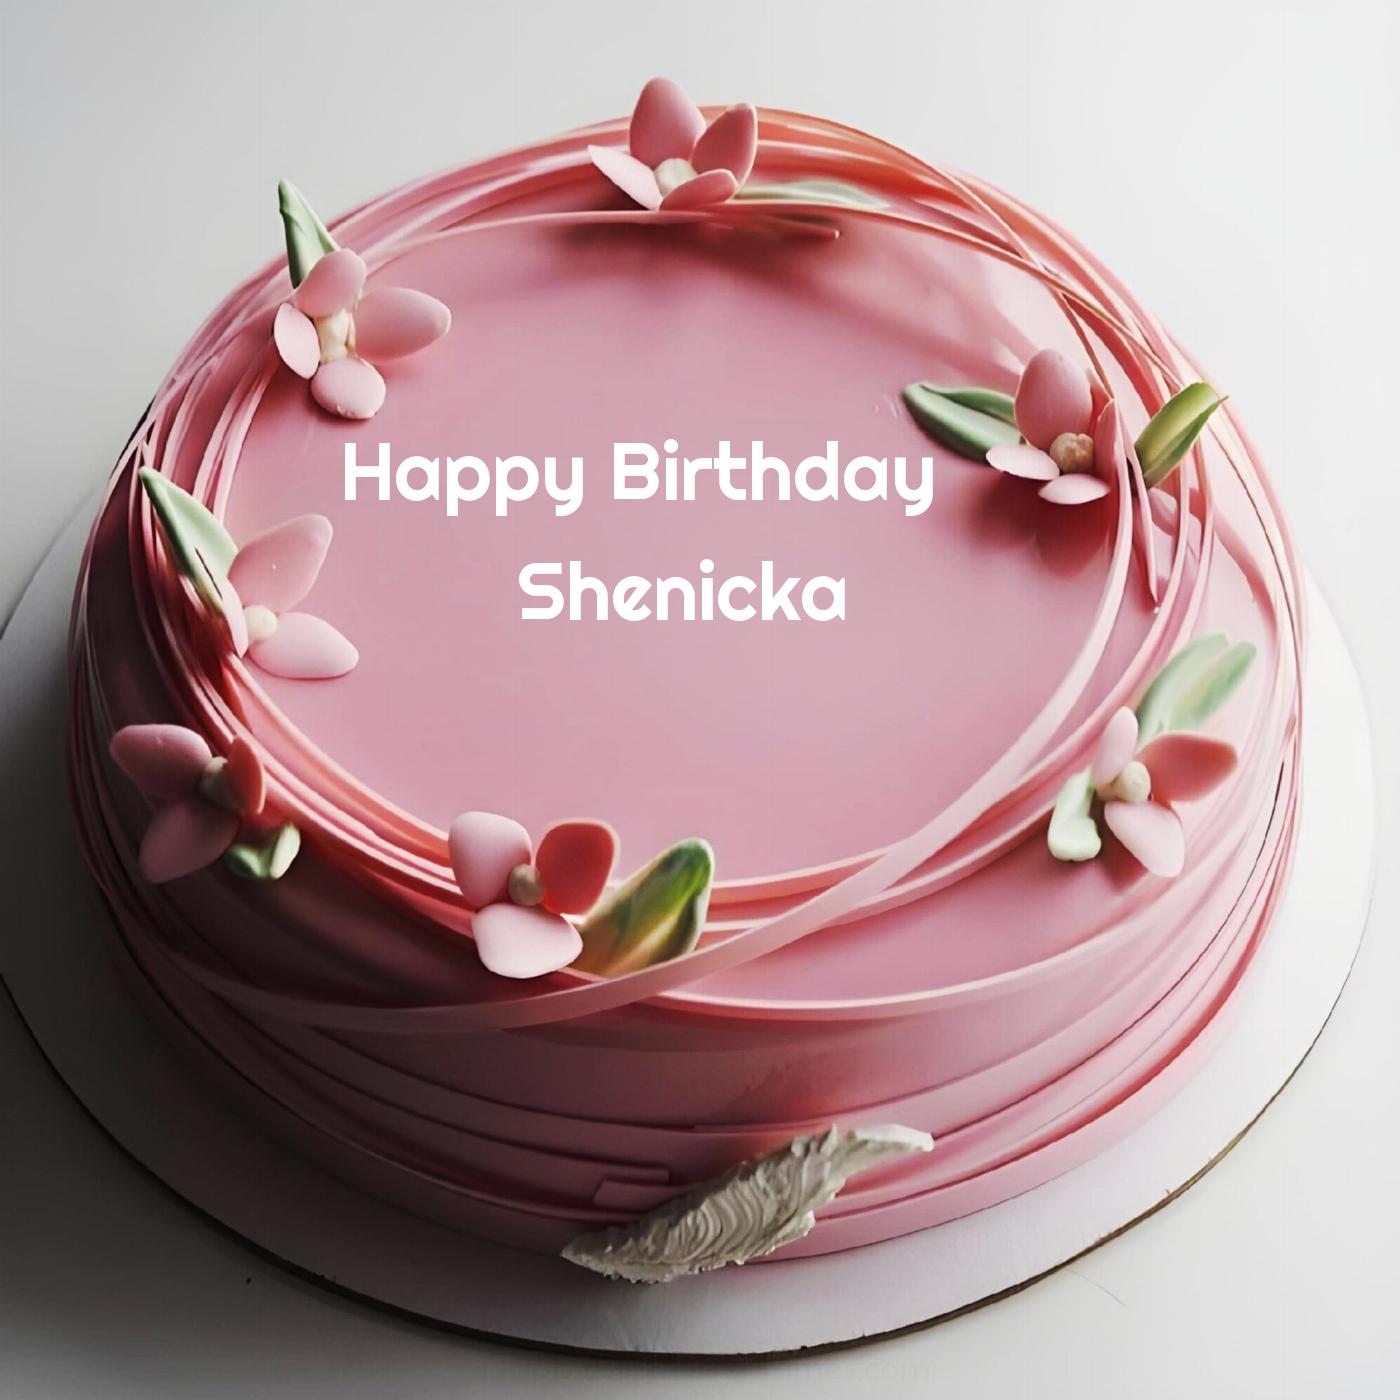 Happy Birthday Shenicka Pink Flowers Cake